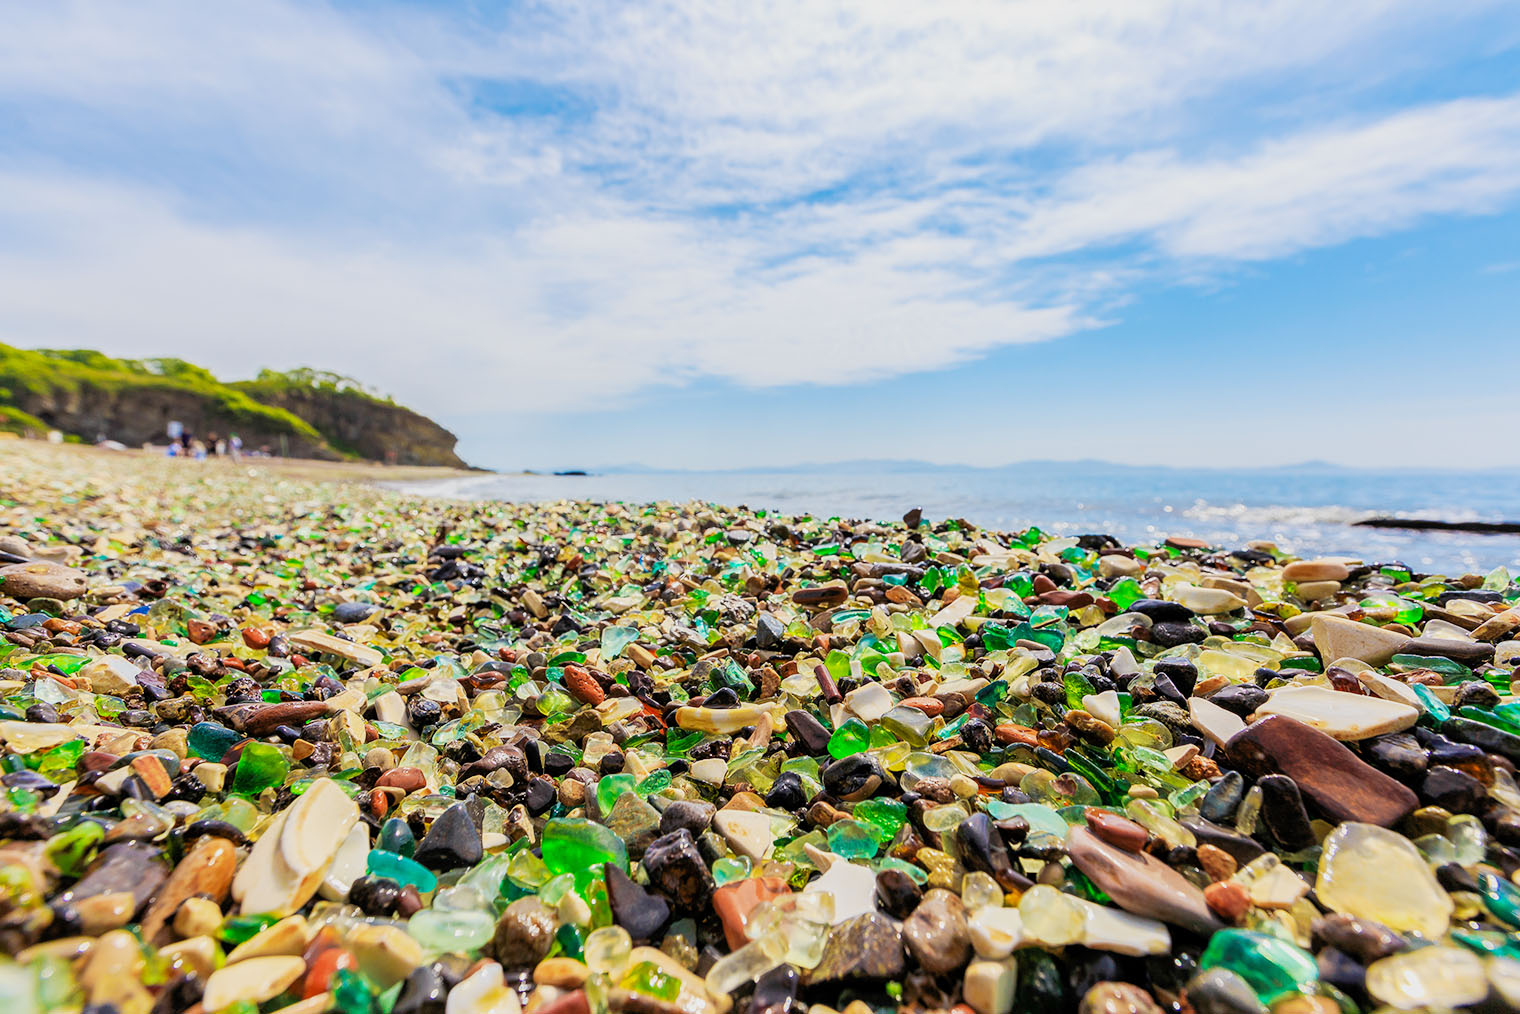 Стеклянный пляж. Фотография: Alexander Khitrov / Shutterstock / FOTODOM